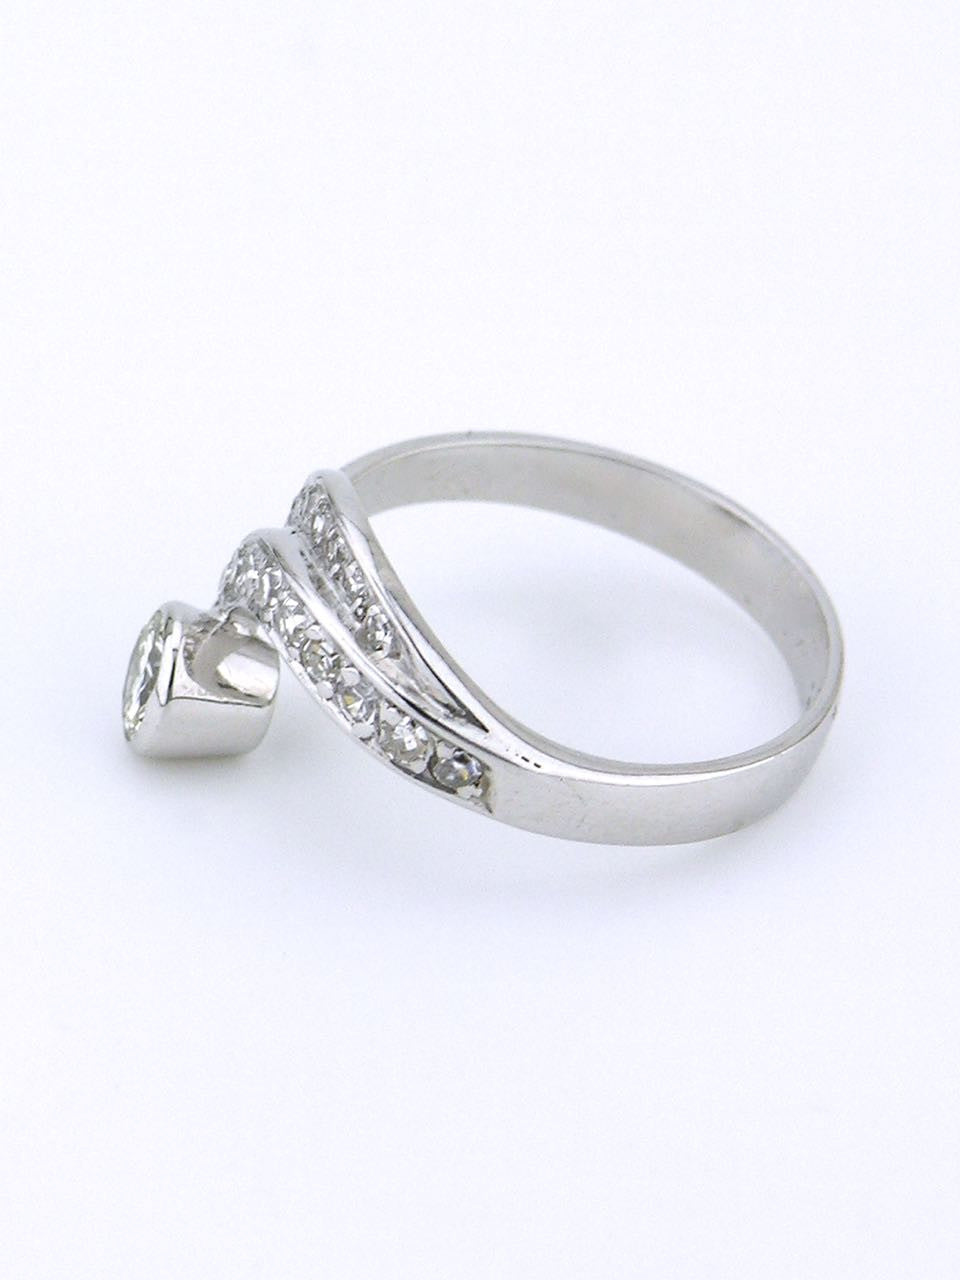 18k white gold and diamond swirl ring